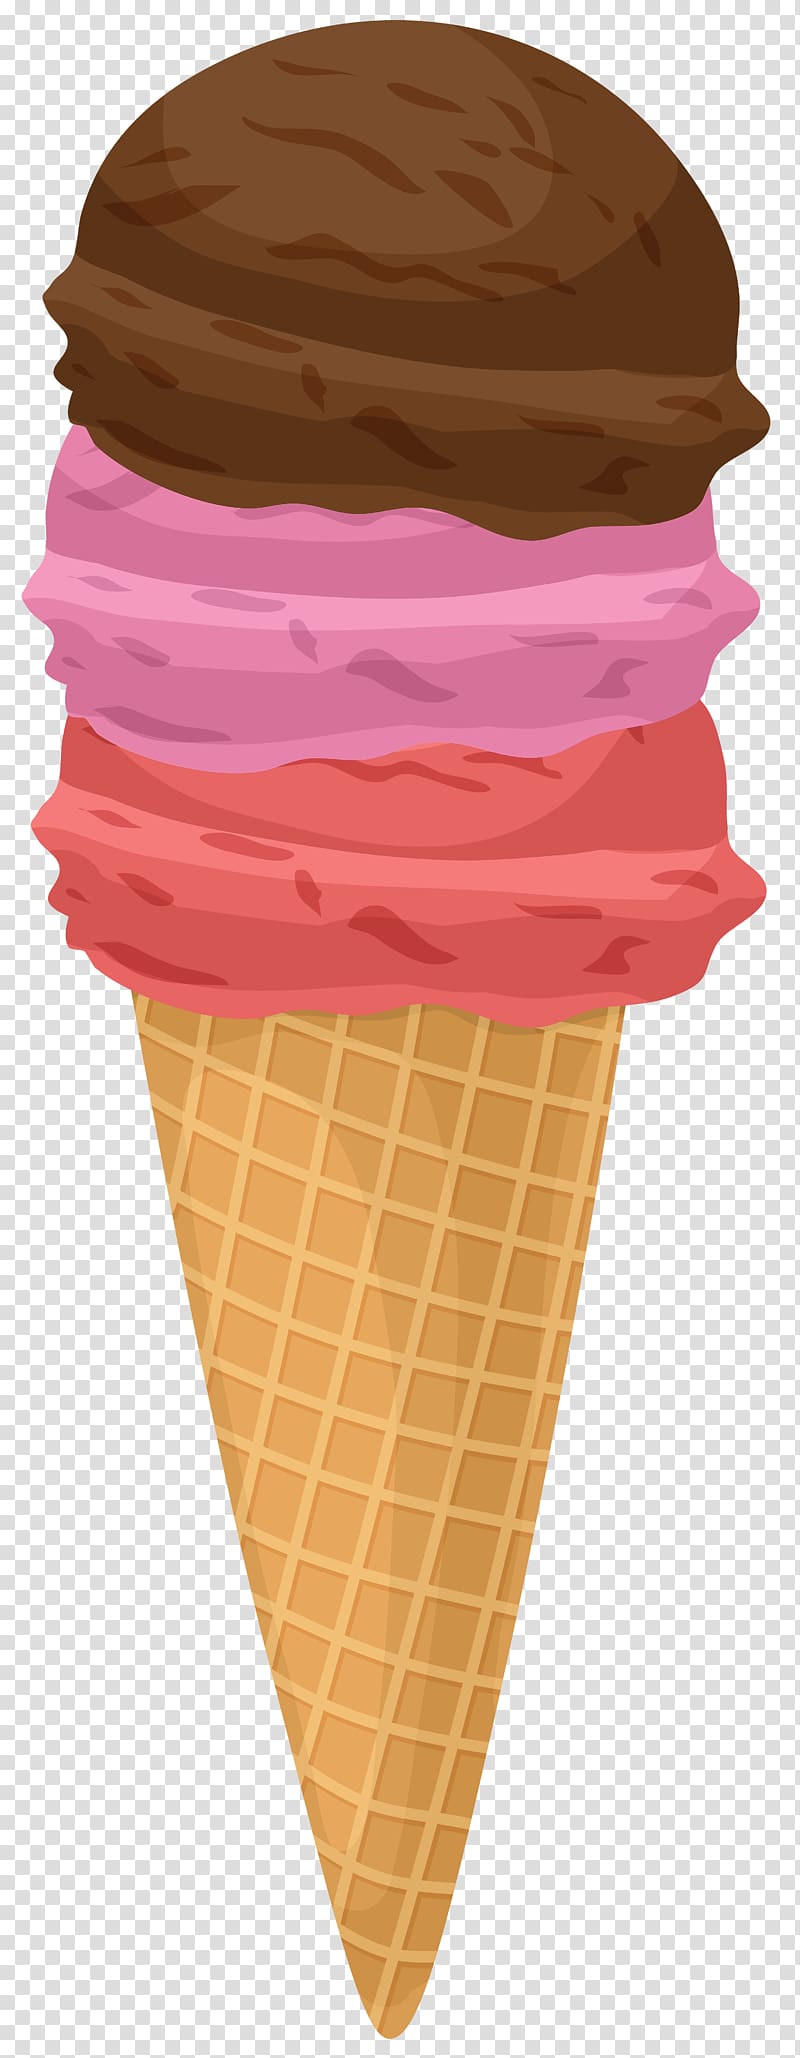 ice cream , Ice Cream Cones Strawberry ice cream Neapolitan ice cream, ice cream transparent background PNG clipart